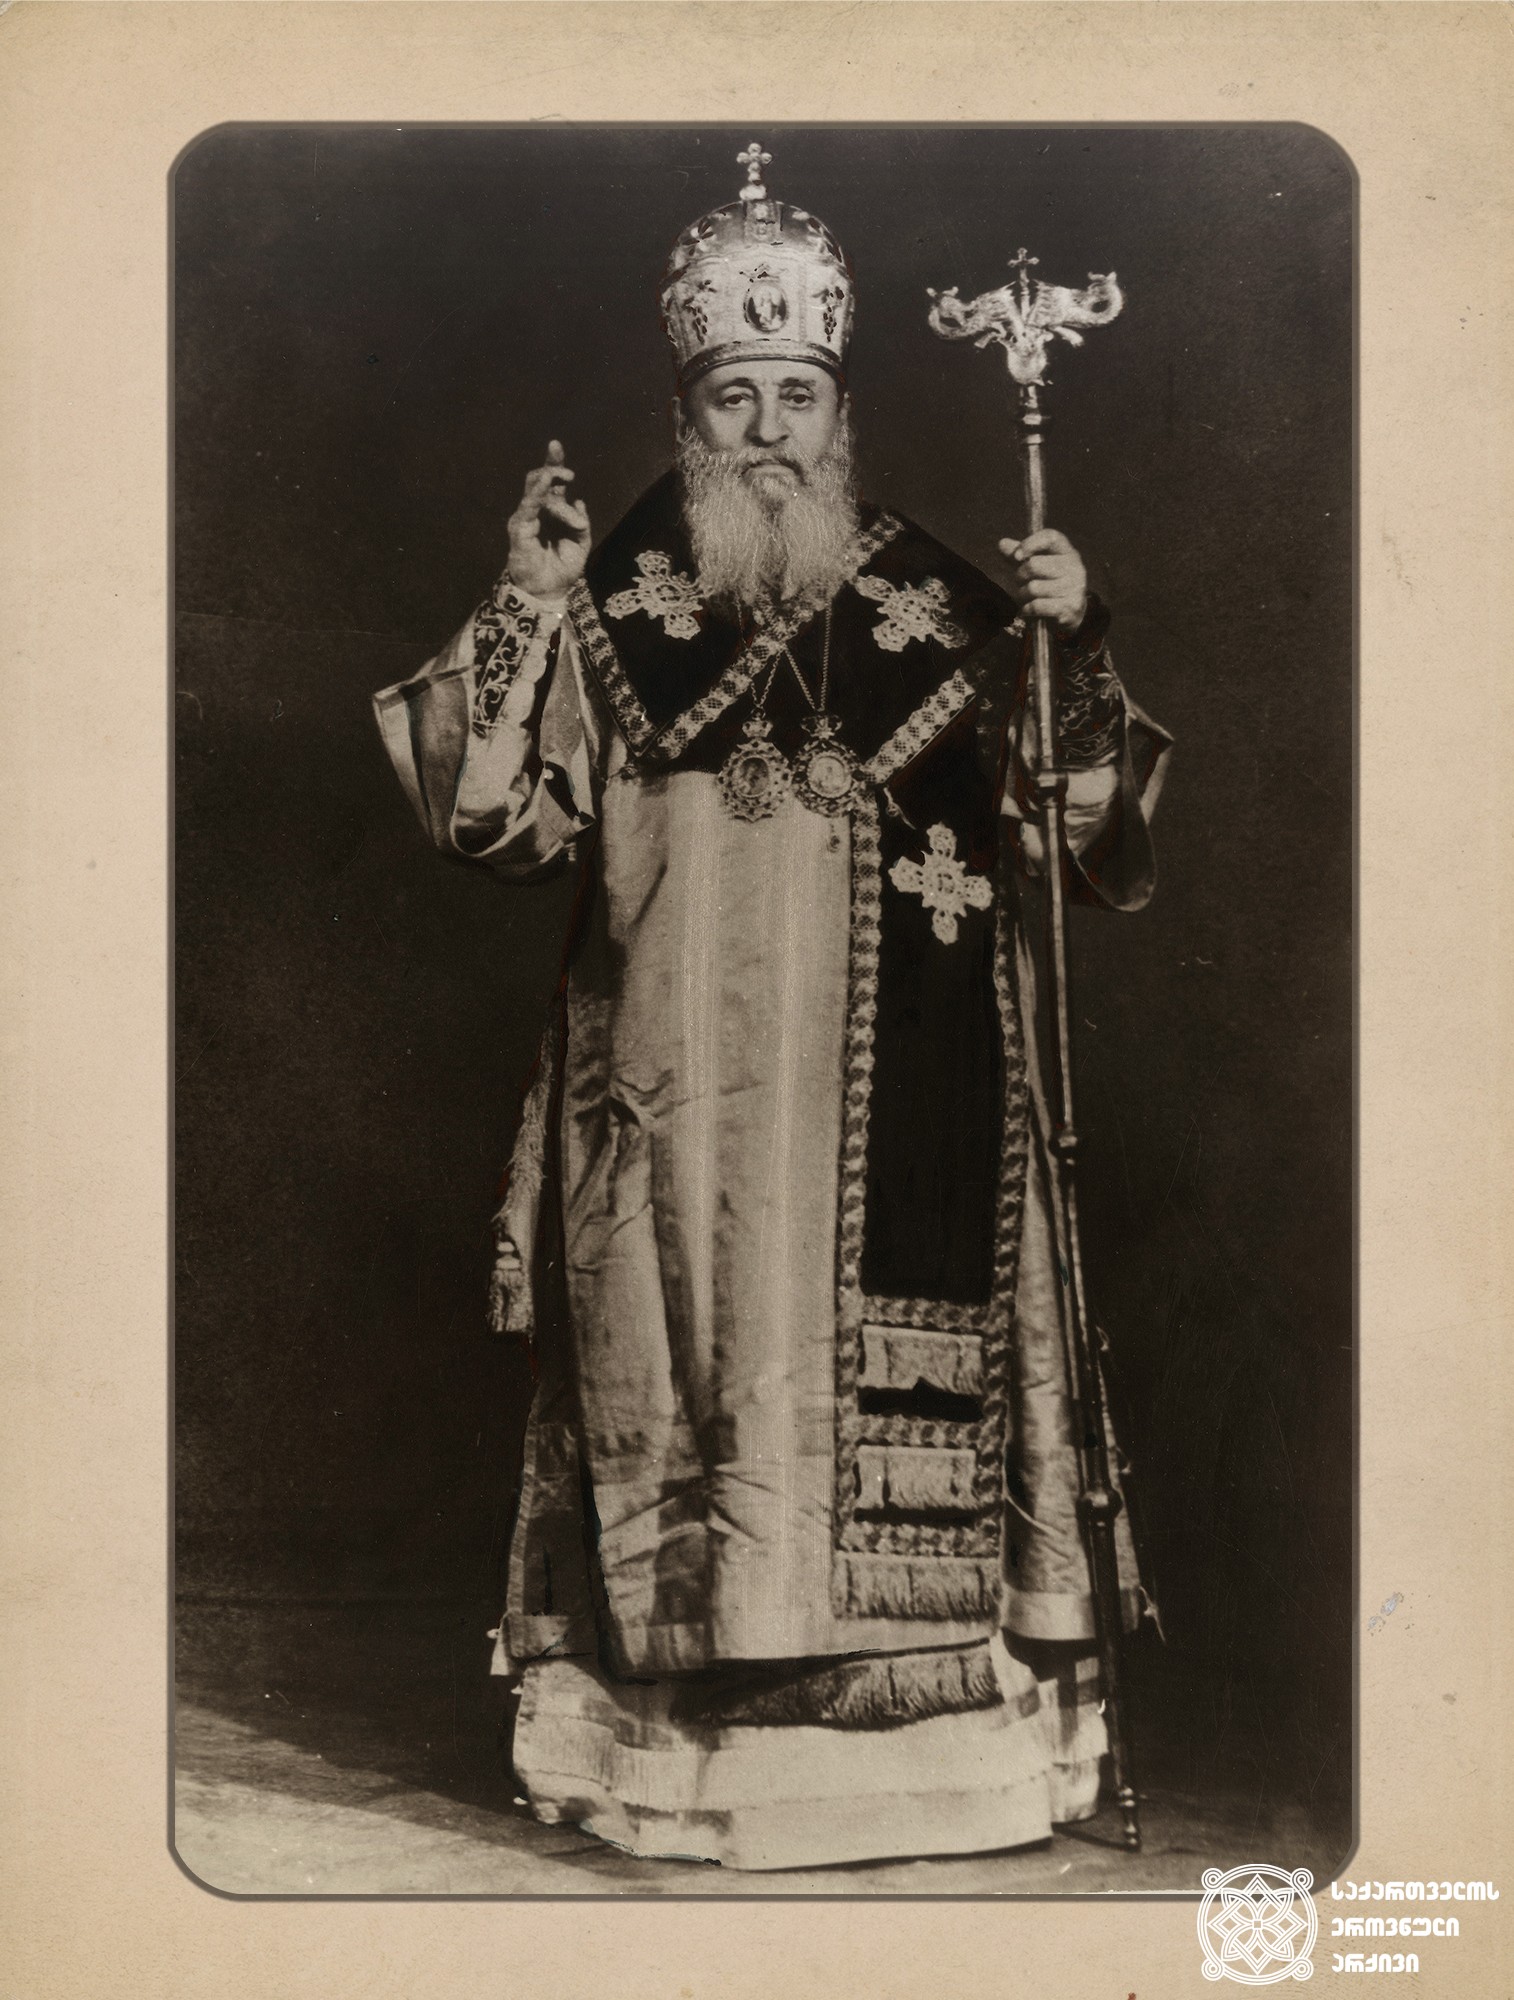 პატრიარქი ეფრემ II (სიდამონიძე) (1960-1972 წლები). <br>
თბილისი [1960 წელი]. <br>

Patriarch Ephrem II (Sidamonidze) (1960-1972). <br>
Tbilisi [1960]. <br>